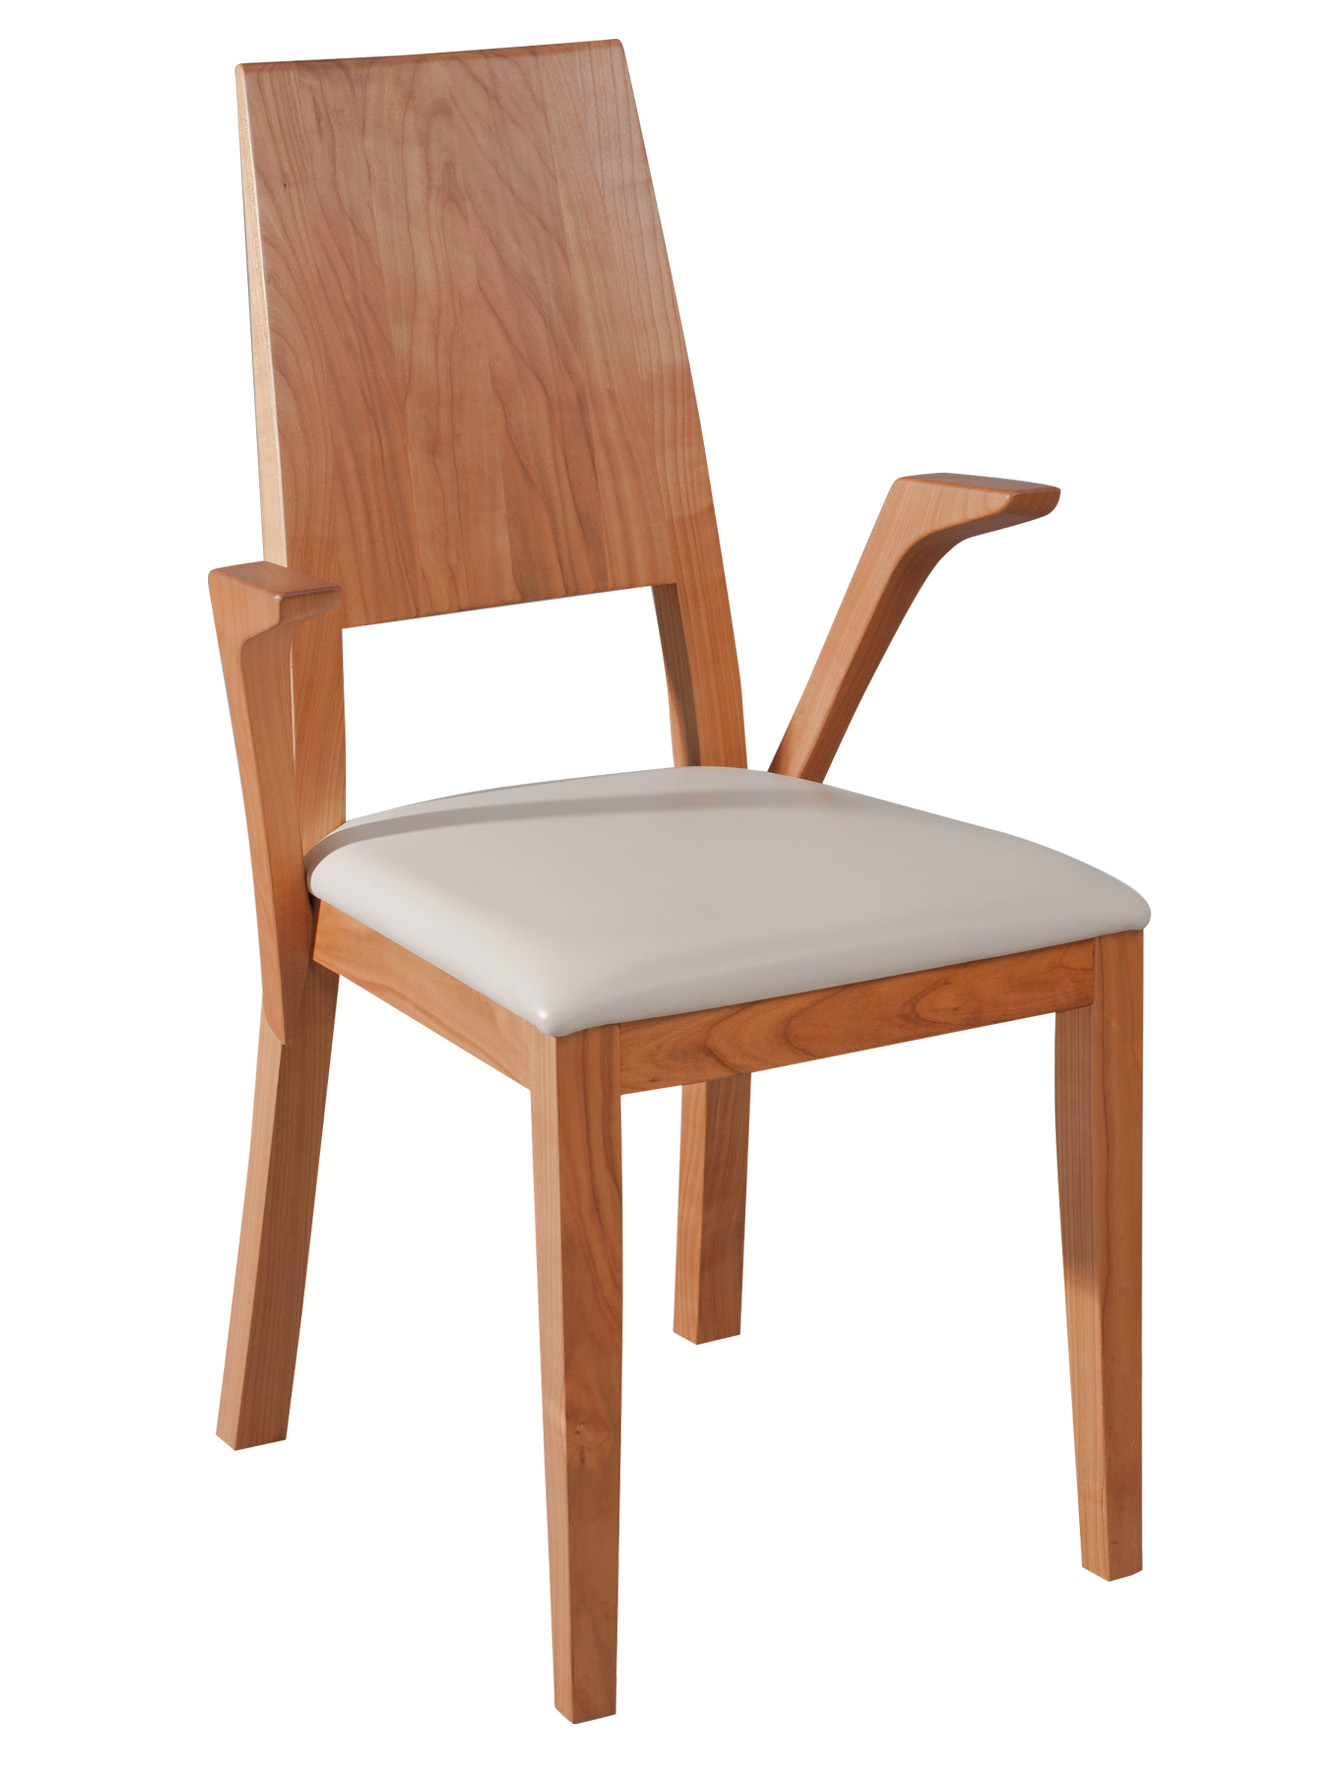 CLASSIC Stuhl mit offenen Armlehnen